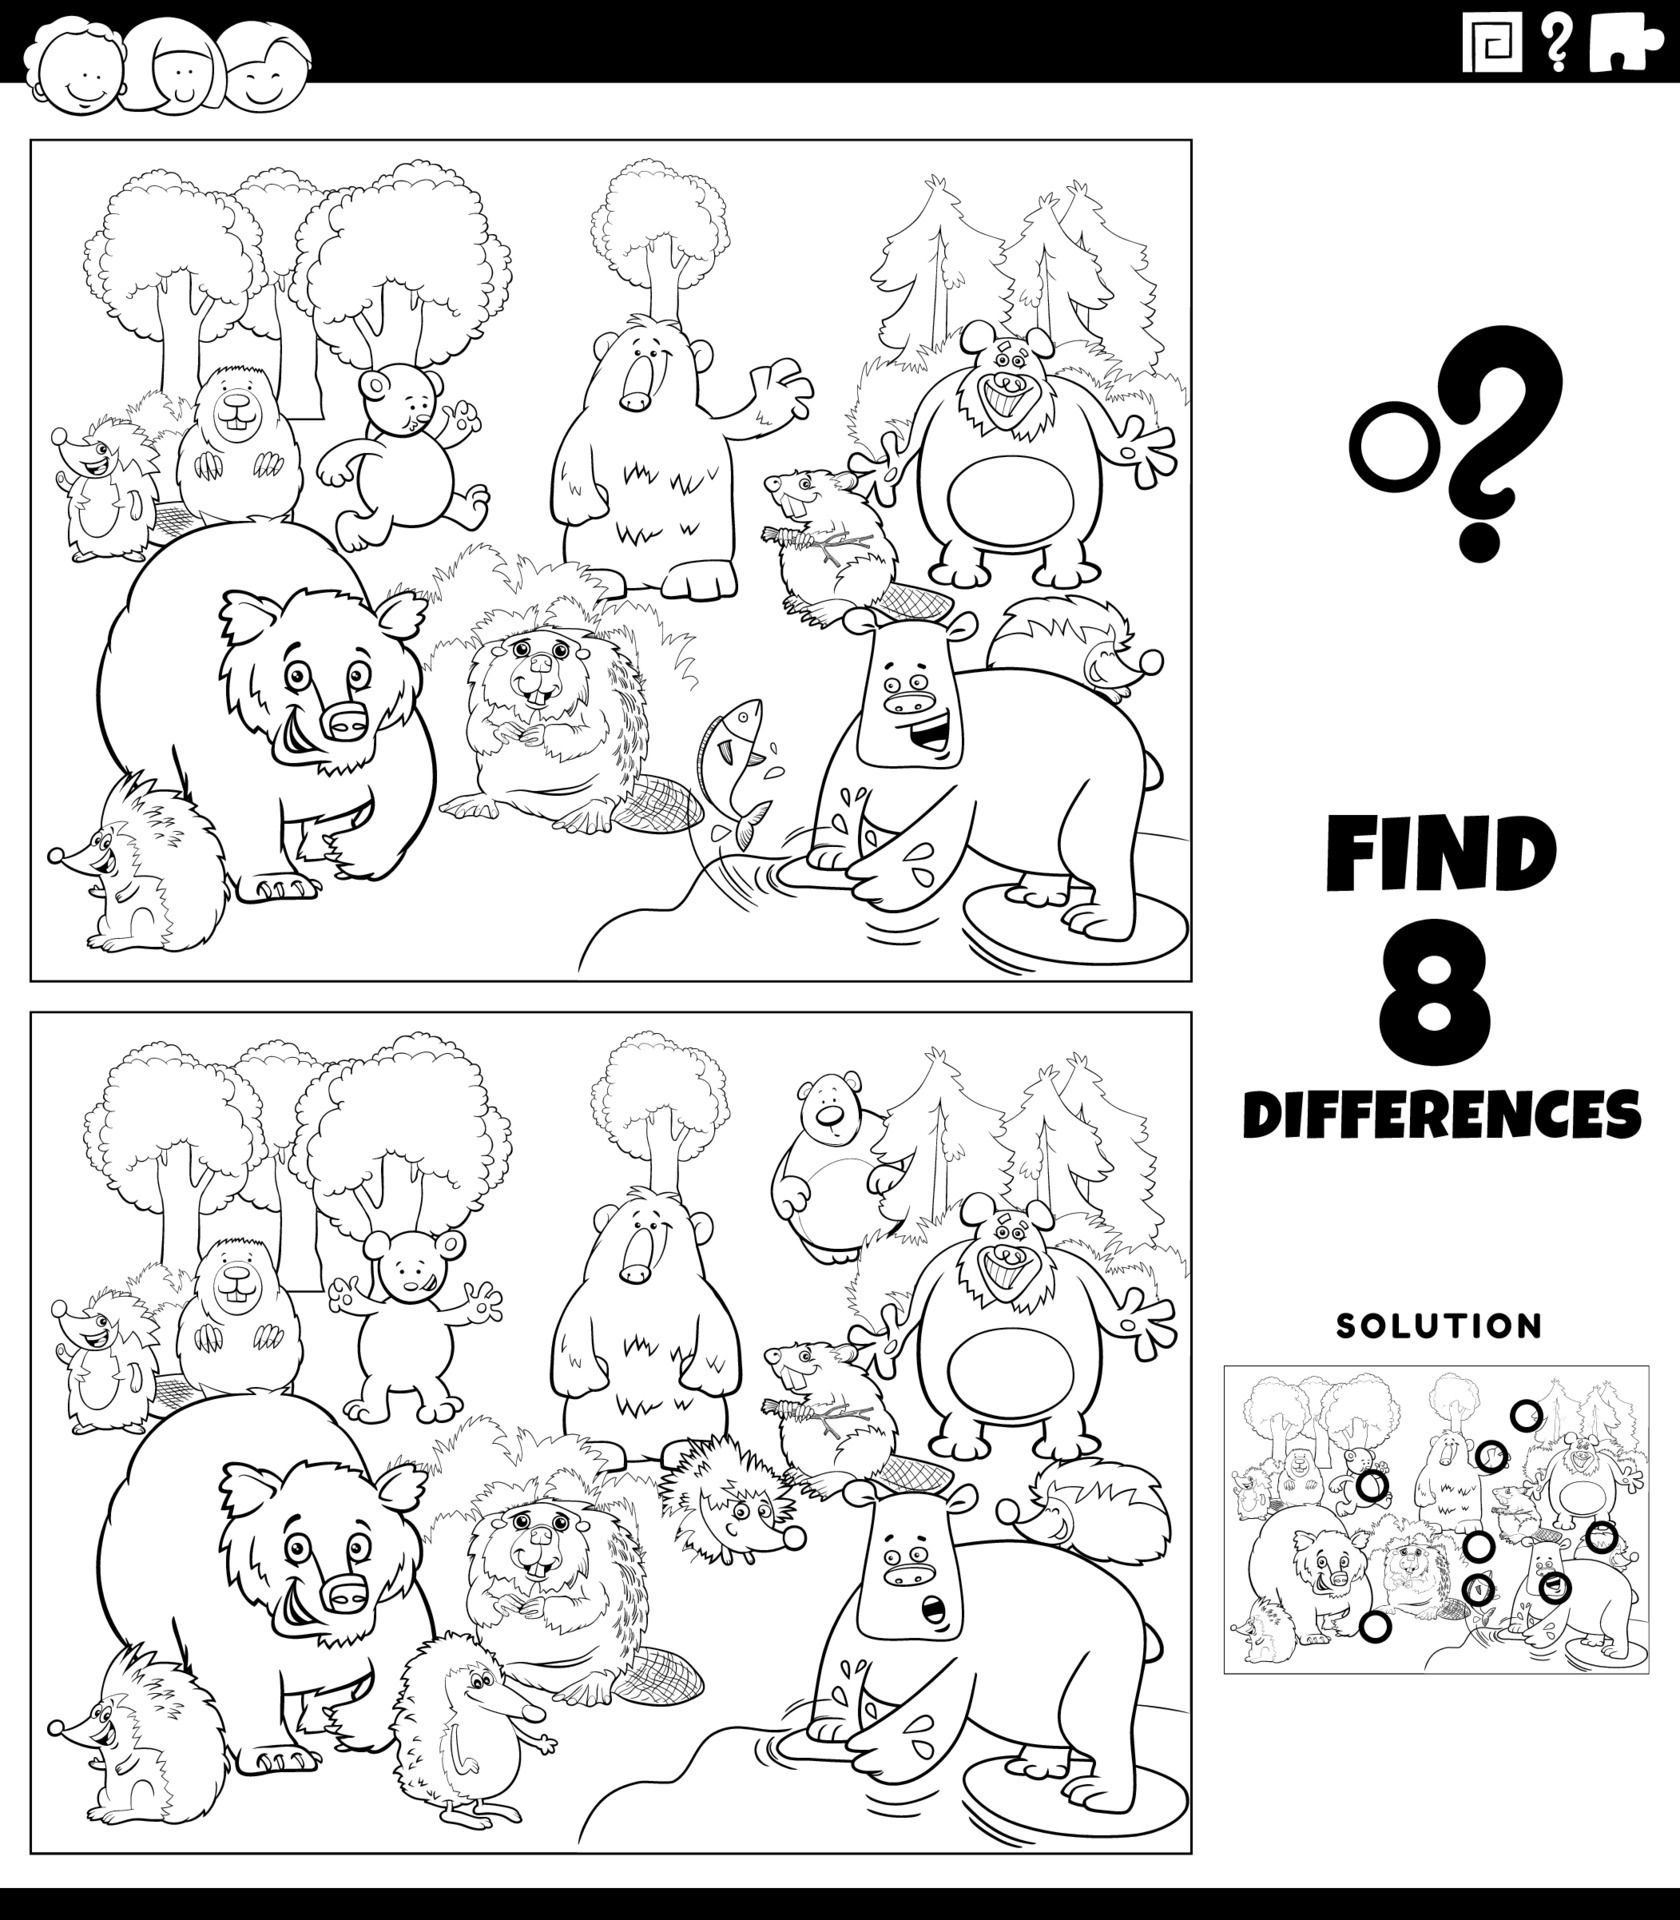 Desenho de jogo de diferenças com cavalos de desenho animado para colorir